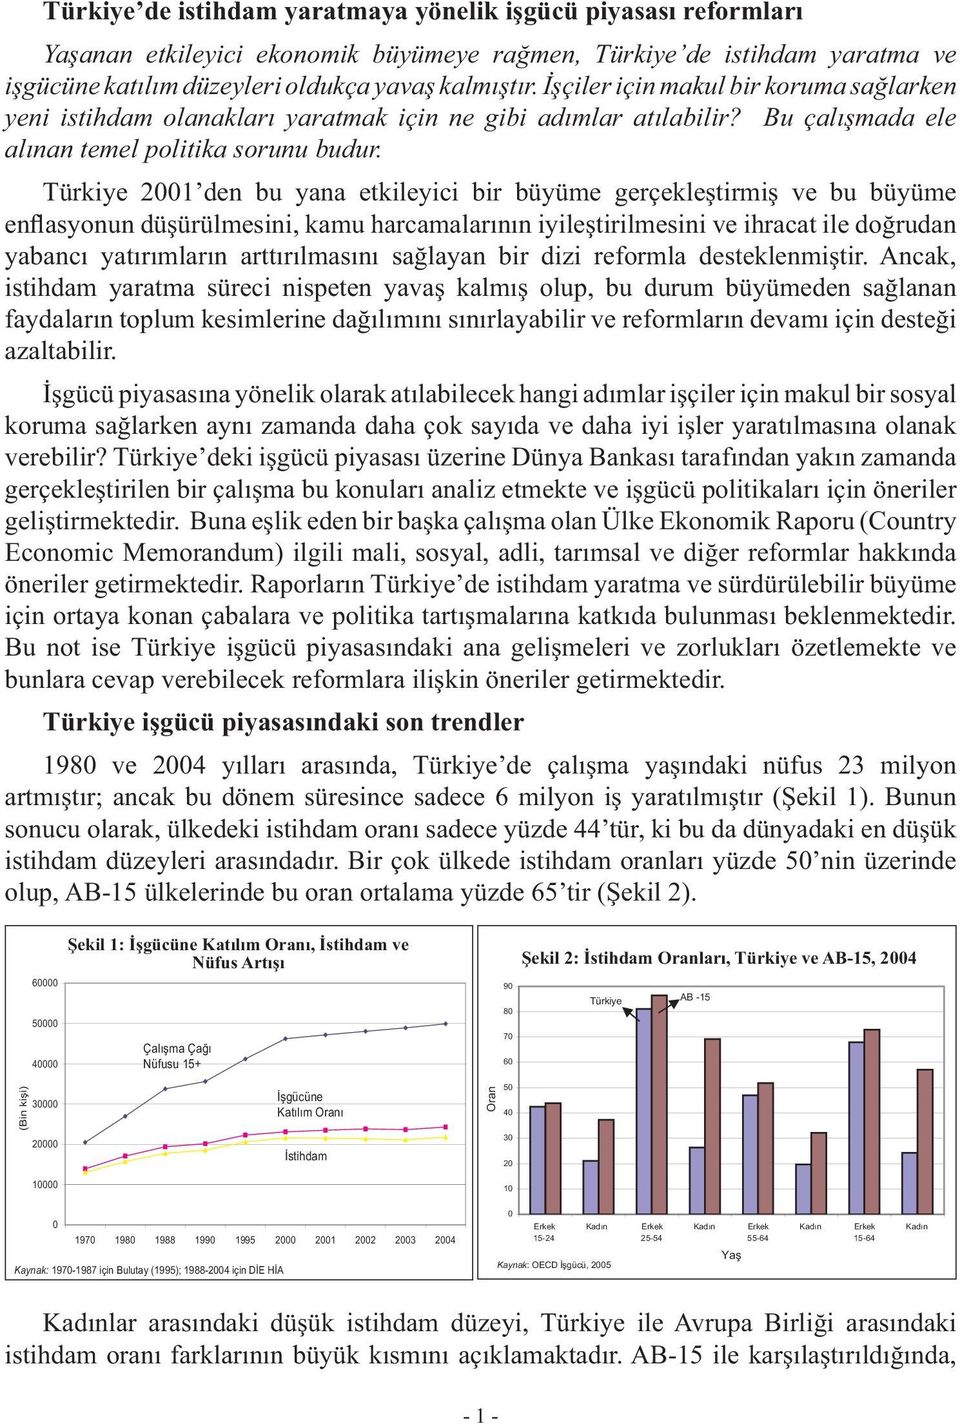 Türkiye 2001 den bu yana etkileyici bir büyüme gerçekleştirmiş ve bu büyüme enflasyonun düşürülmesini, kamu harcamalarının iyileştirilmesini ve ihracat ile doğrudan yabancı yatırımların